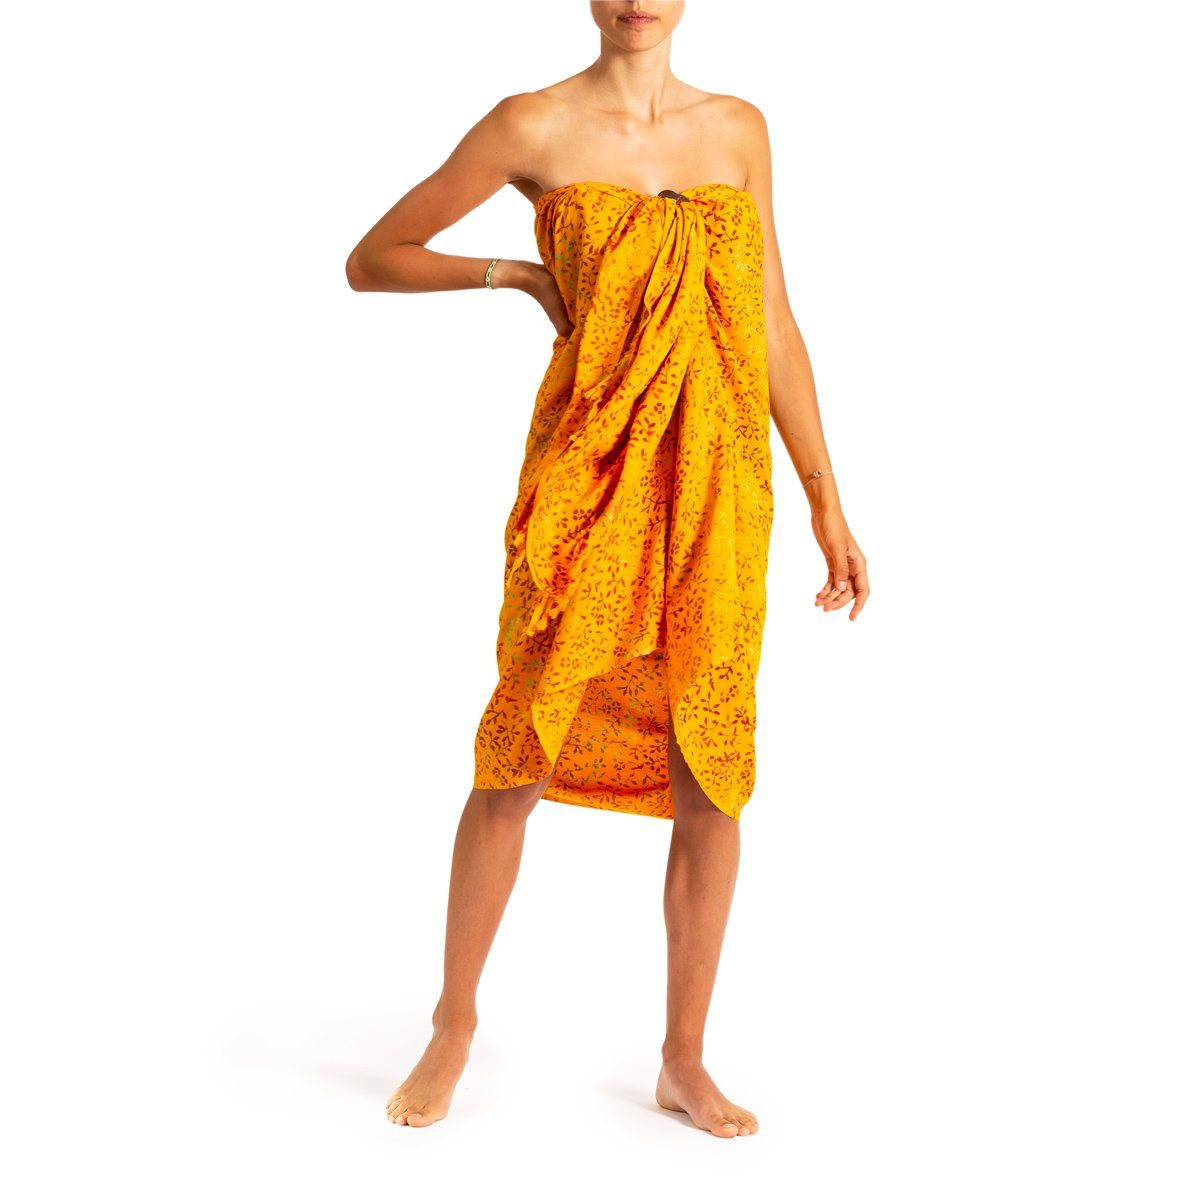 PANASIAM Pareo Sarong Wachsbatik Orangetöne aus hochwertiger Viskose Strandtuch, Strandkleid Bikini Cover-up Tuch für den Strand Schultertuch Halstuch B303 orange leaf